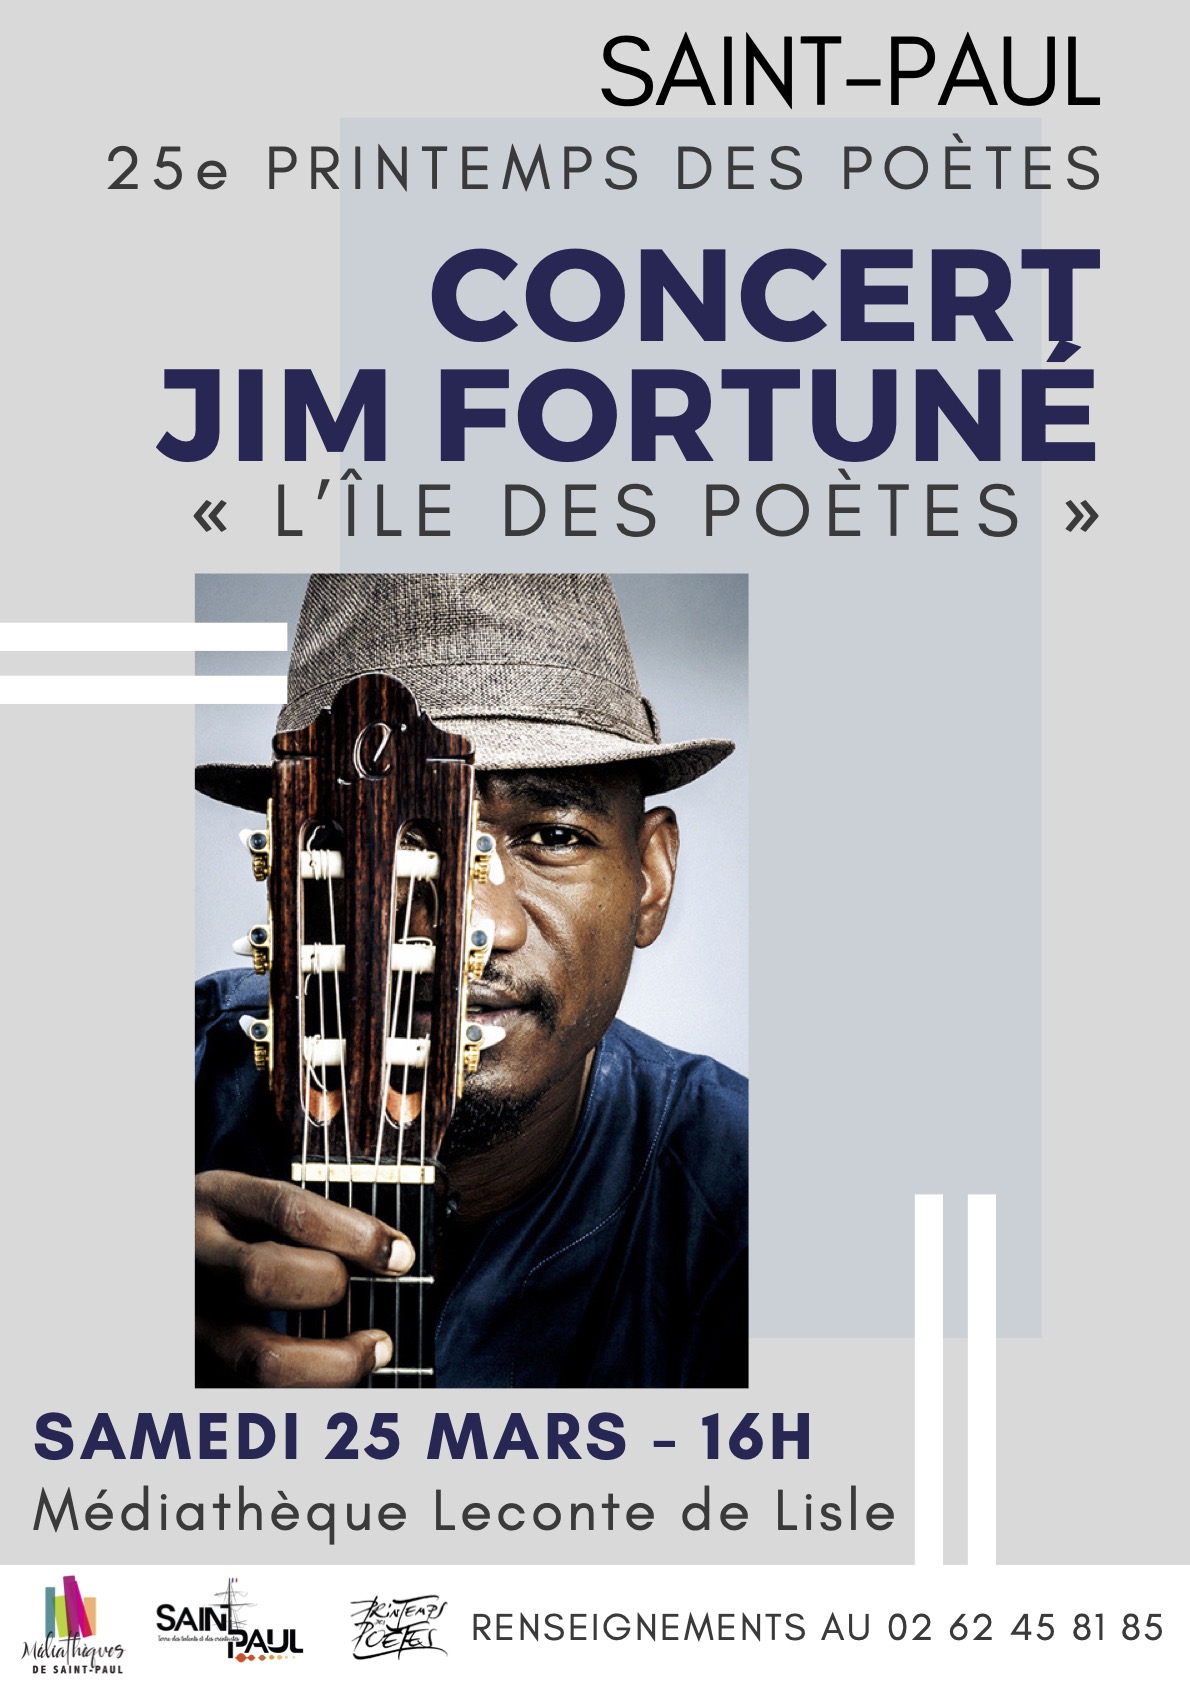 Le chanteur, Jim FORTUNÉ, se produira en concert gratuit ce samedi 25 mars 2023 à 16 heures à la médiathèque Leconte-de-LISLE. Plus de renseignement au 02 62 45 81 85.